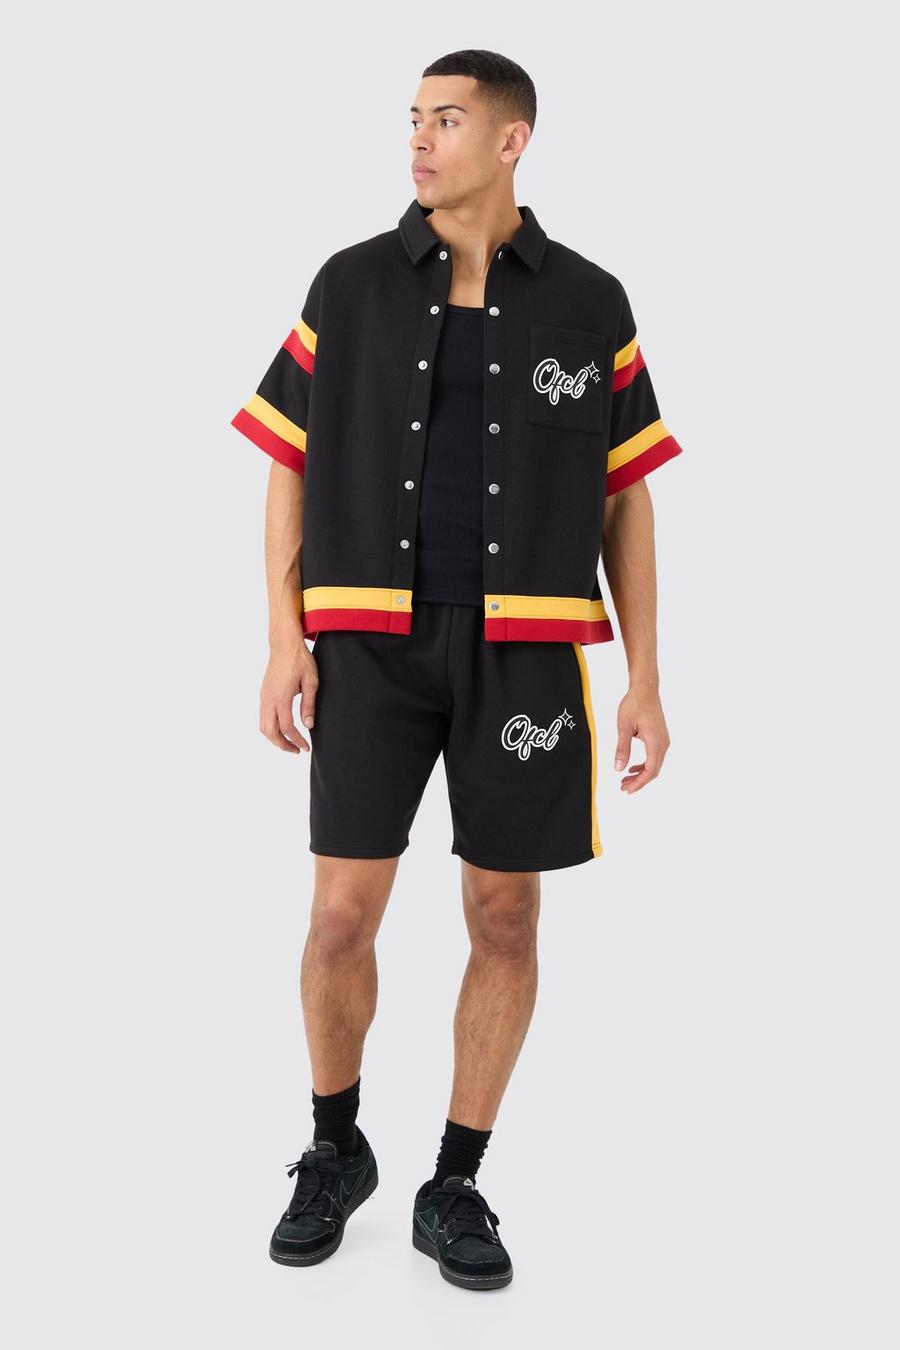 Black Ofcl Baseball Shirt And Shorts Set